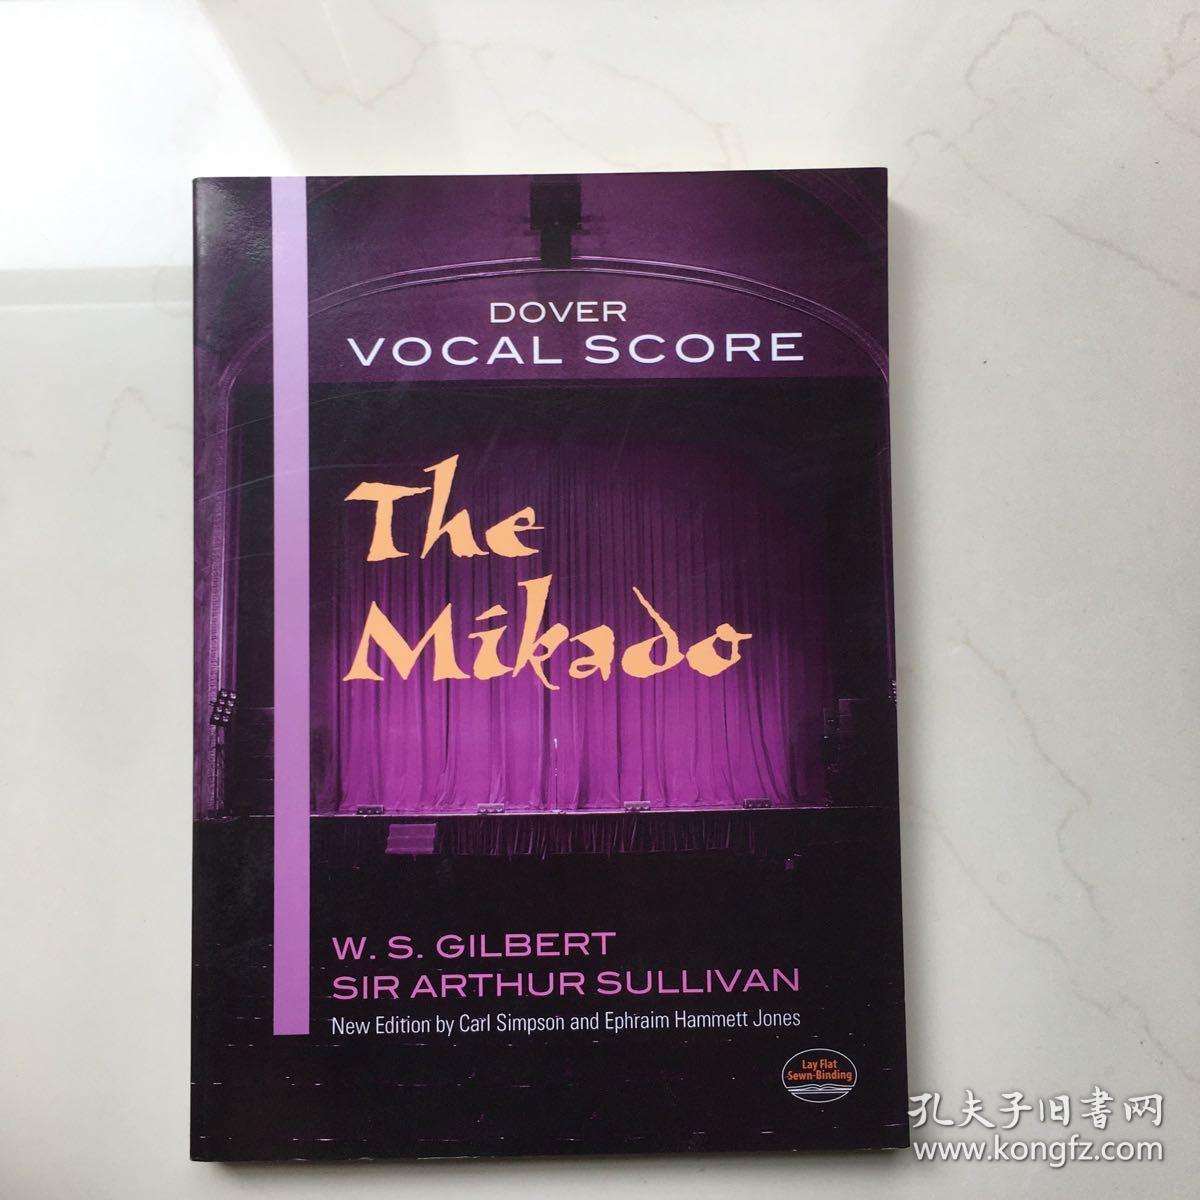 The Mikado (Dover Vocal Scores) 乐谱